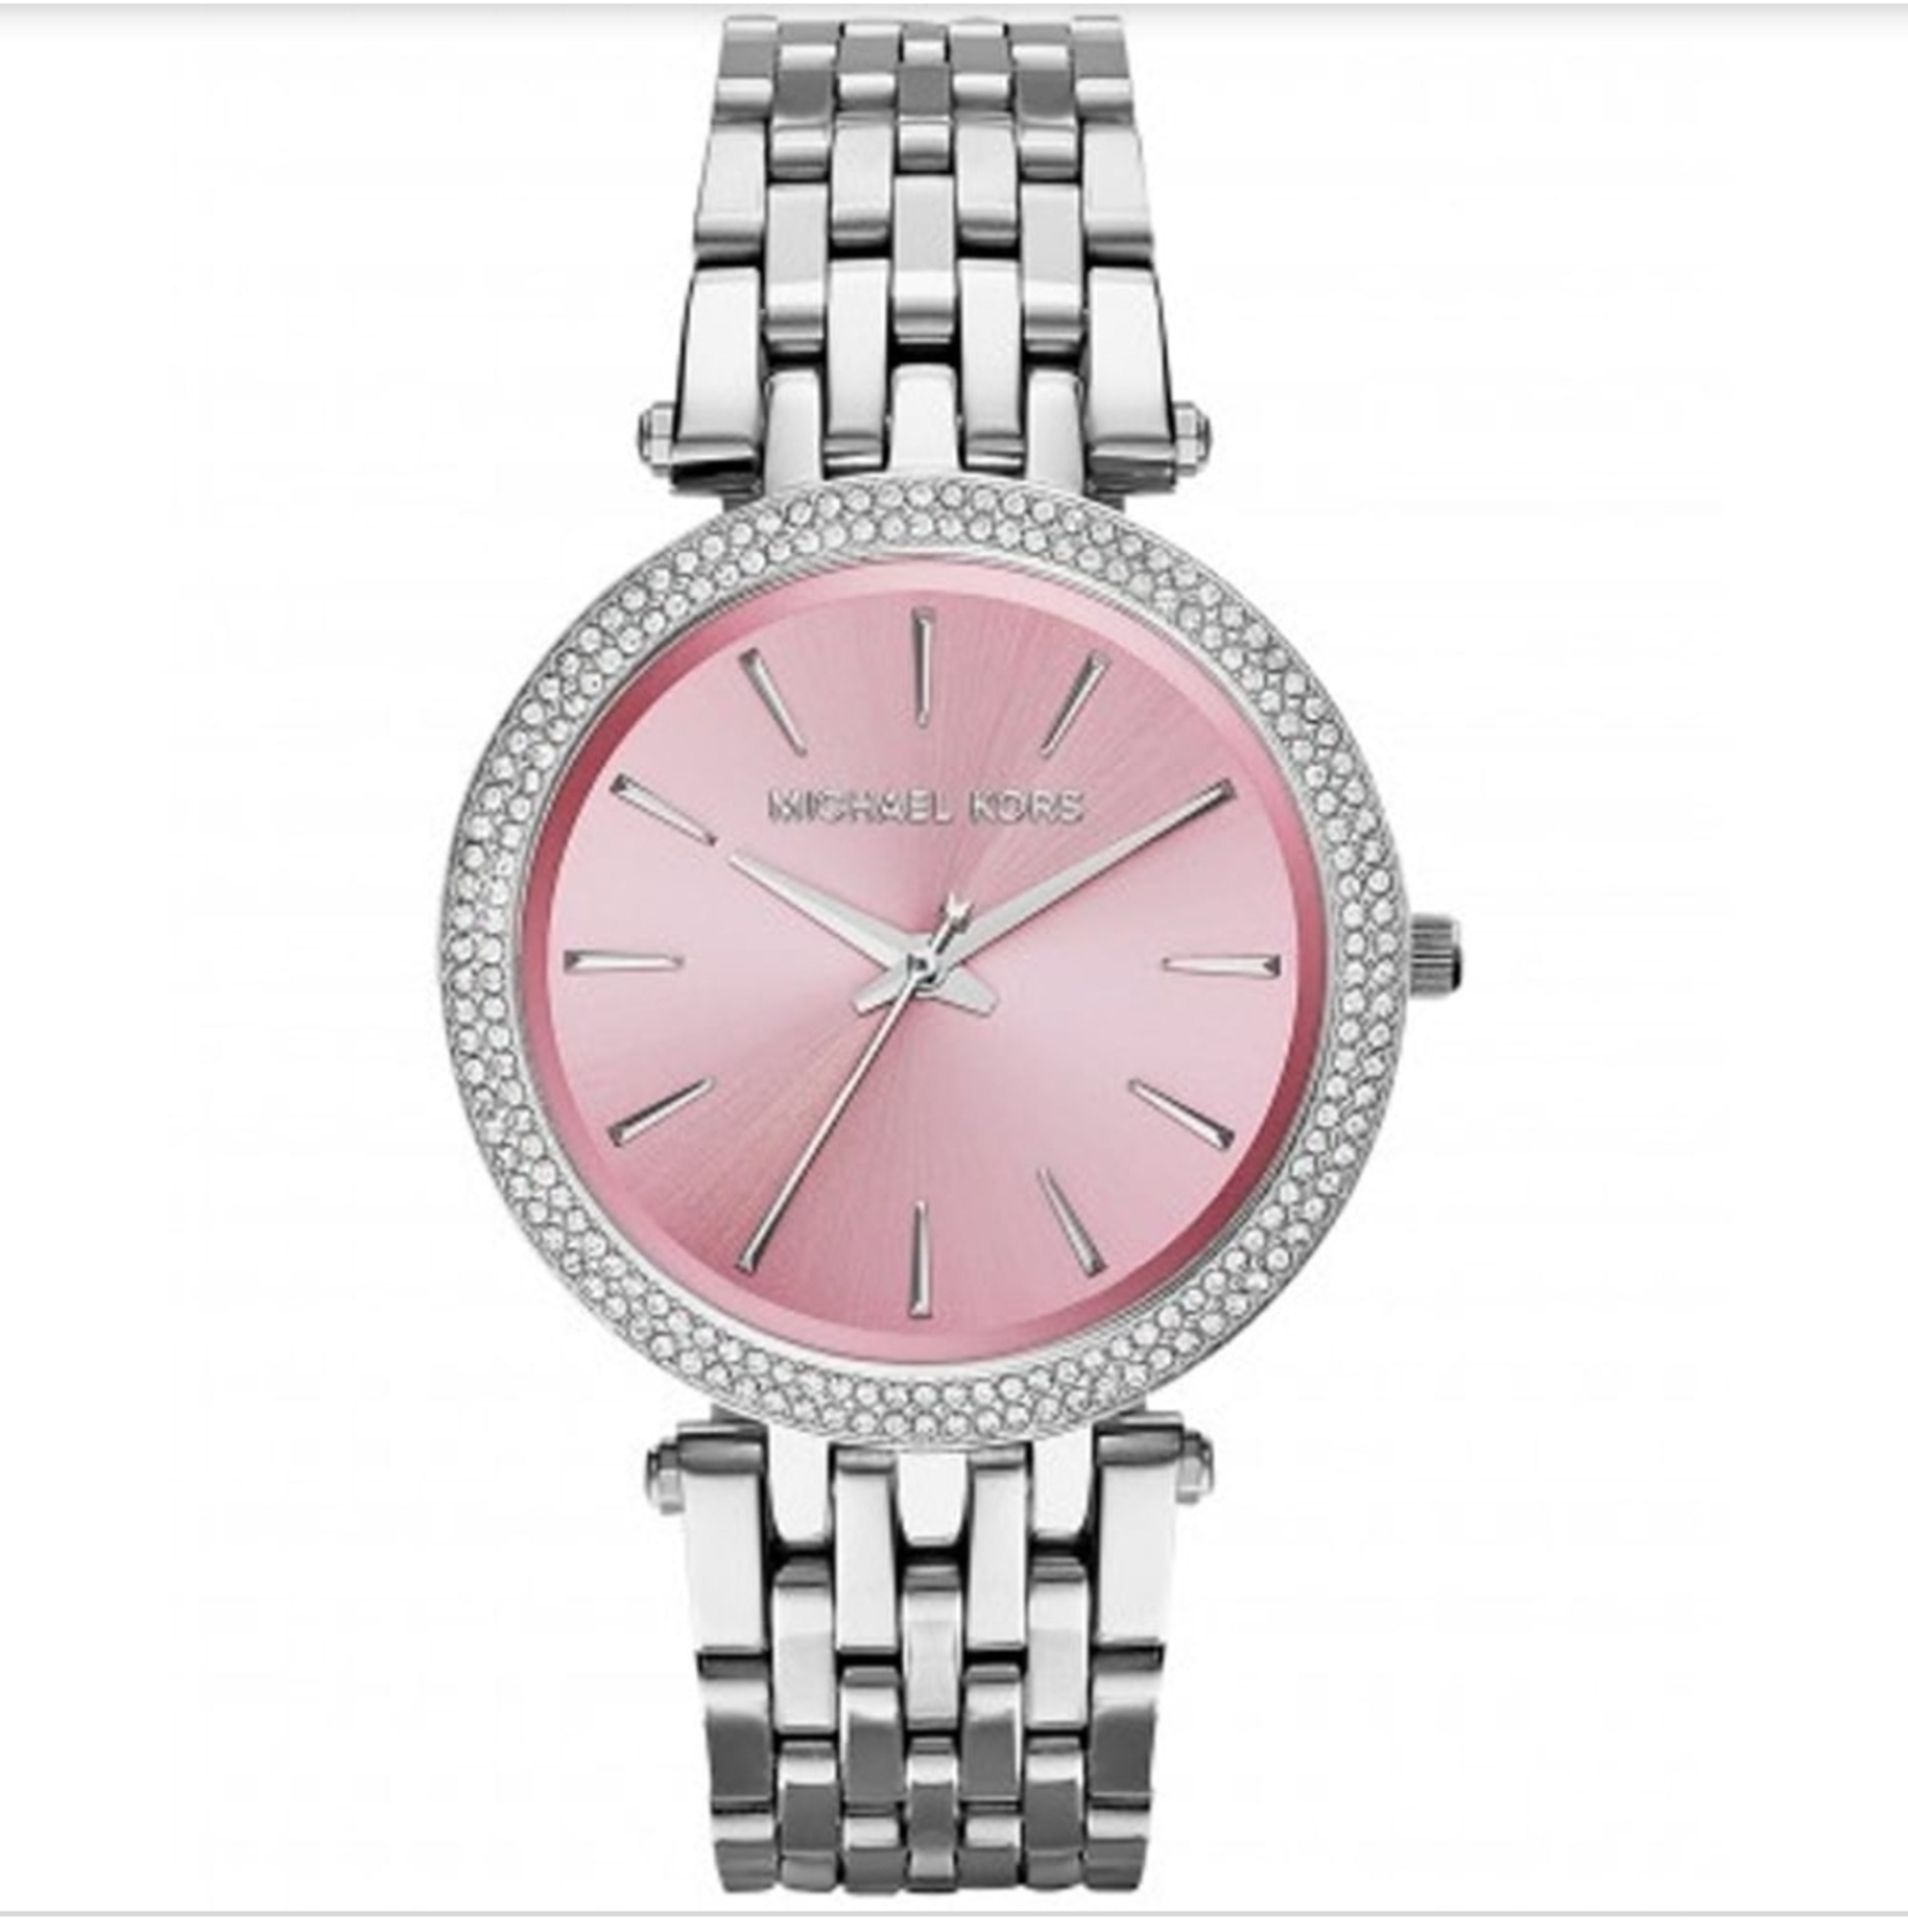 MICHAEL KORS MK3352 Darci Pink & Silver Stainless Steel Ladies Watch